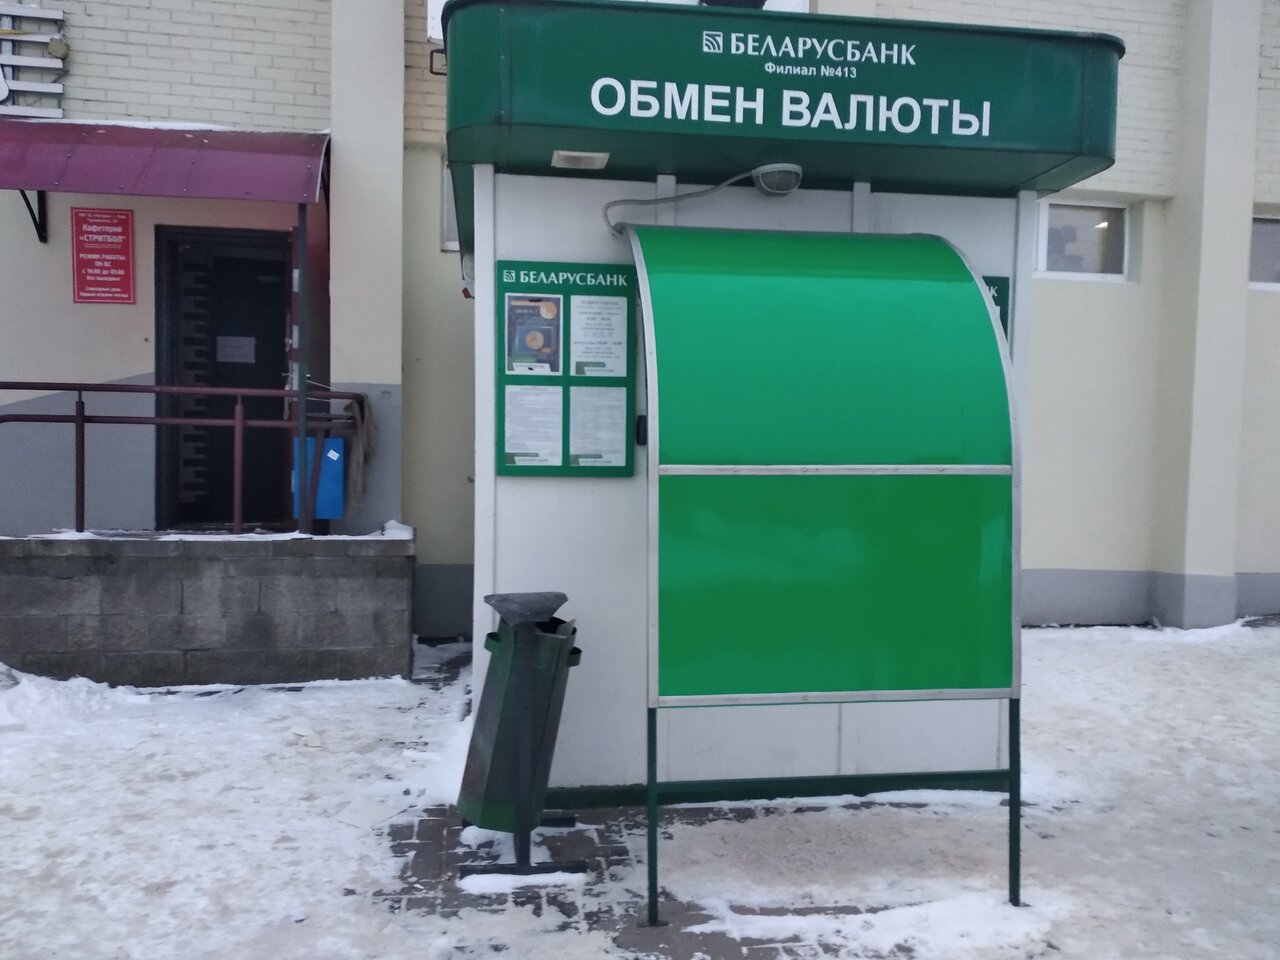 Лида обмен валют время работы обмен разной валюты в москве адреса